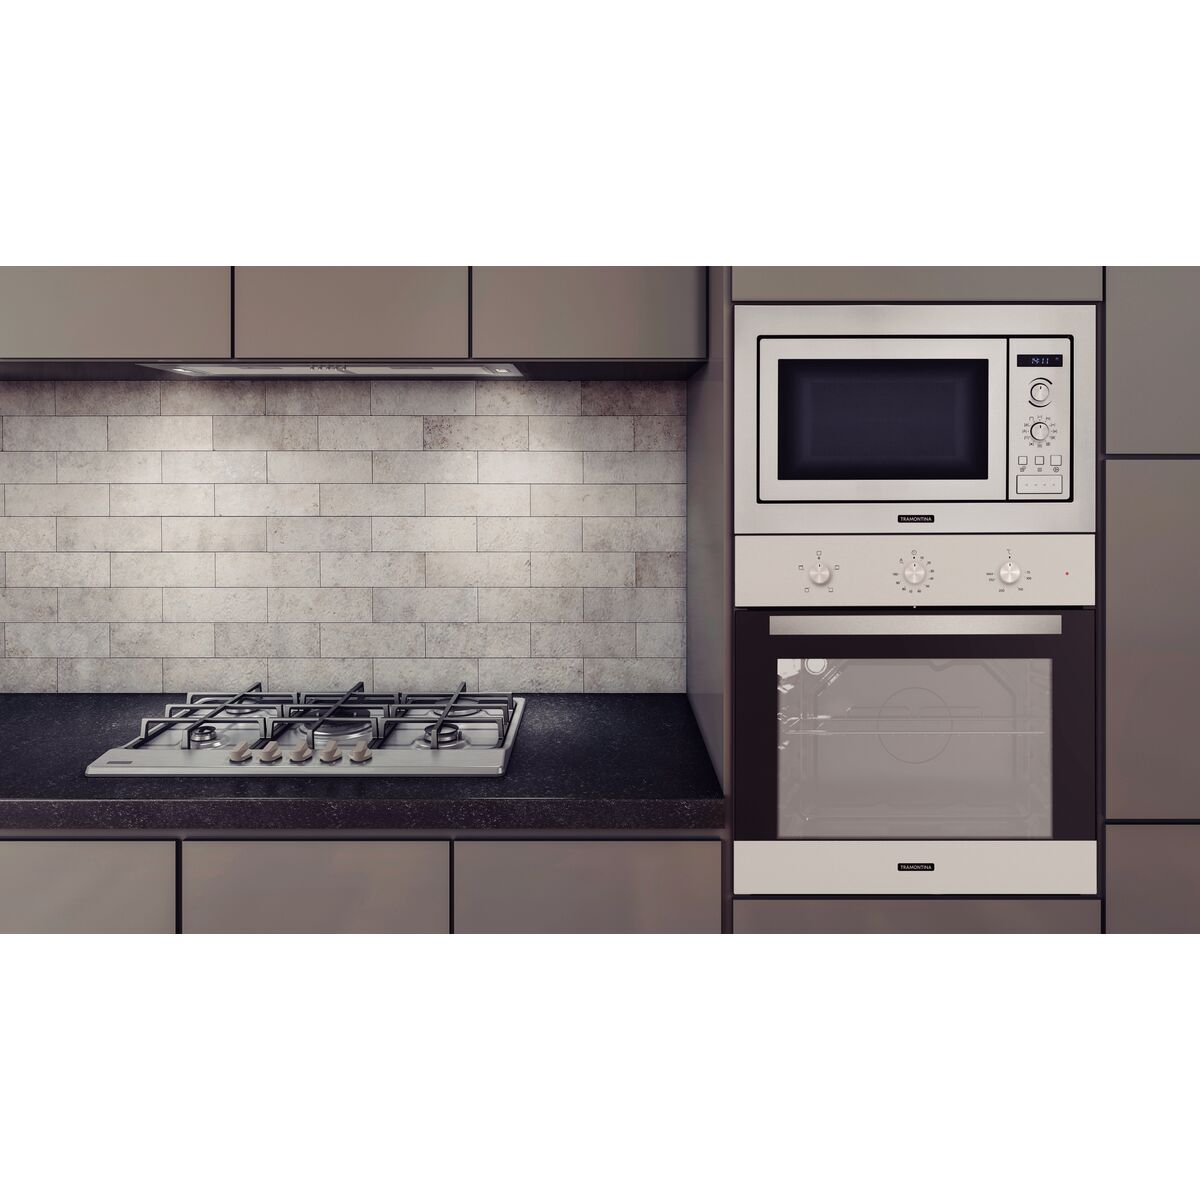 TIPS - Cómo usar el horno eléctrico / Estufa / Cocina 